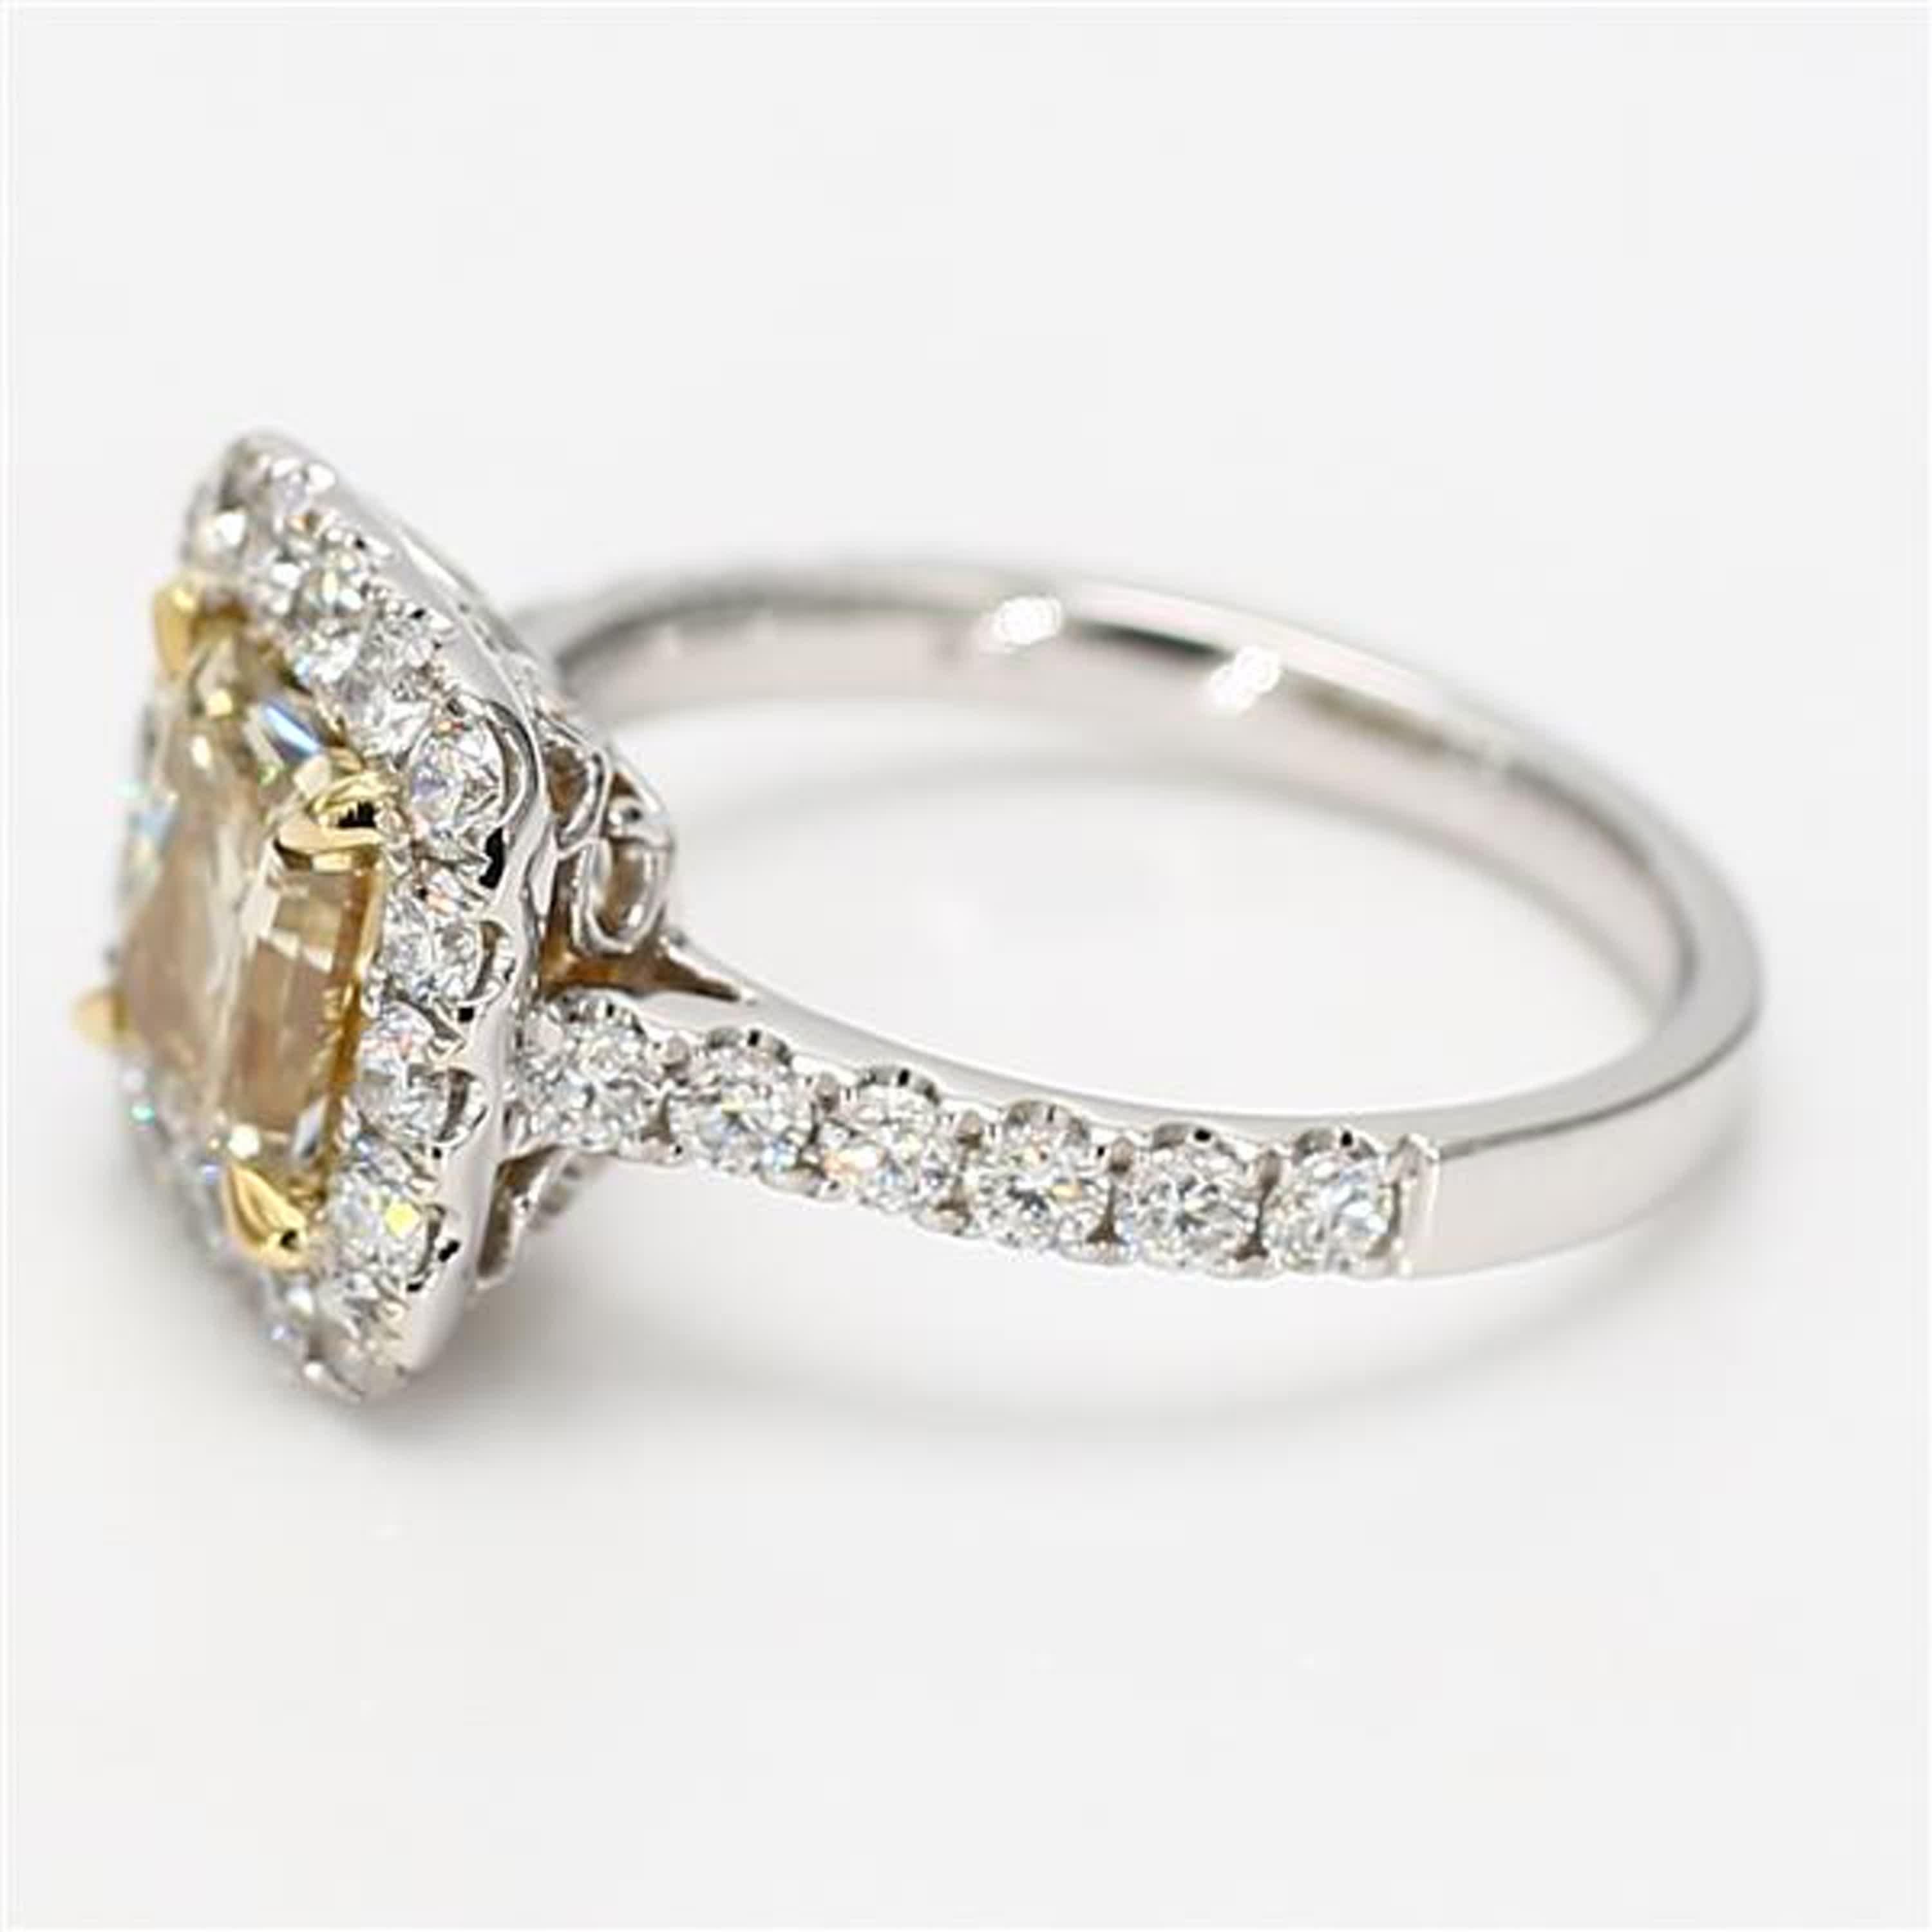 Der klassische GIA-zertifizierte Diamantring von RareGemWorld. Montiert in einer schönen Fassung aus 18 Karat Gelb- und Weißgold mit einem gelben Diamanten im natürlichen Strahlenschliff. Der gelbe Diamant ist von runden weißen Naturdiamanten